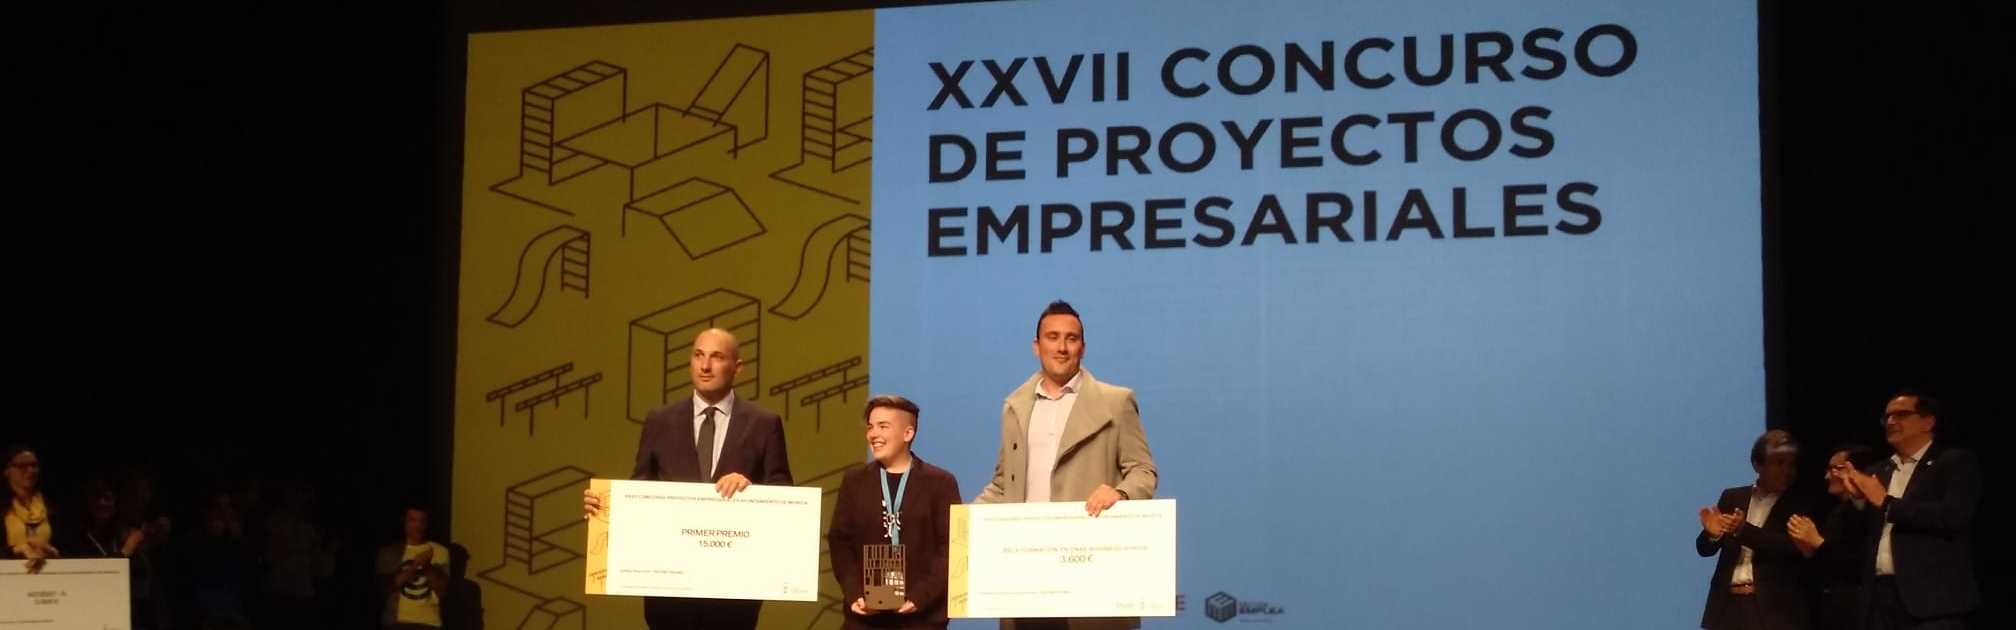 Una estudiante de la UMU gana el “XXVII Concurso de Proyectos Empresariales”